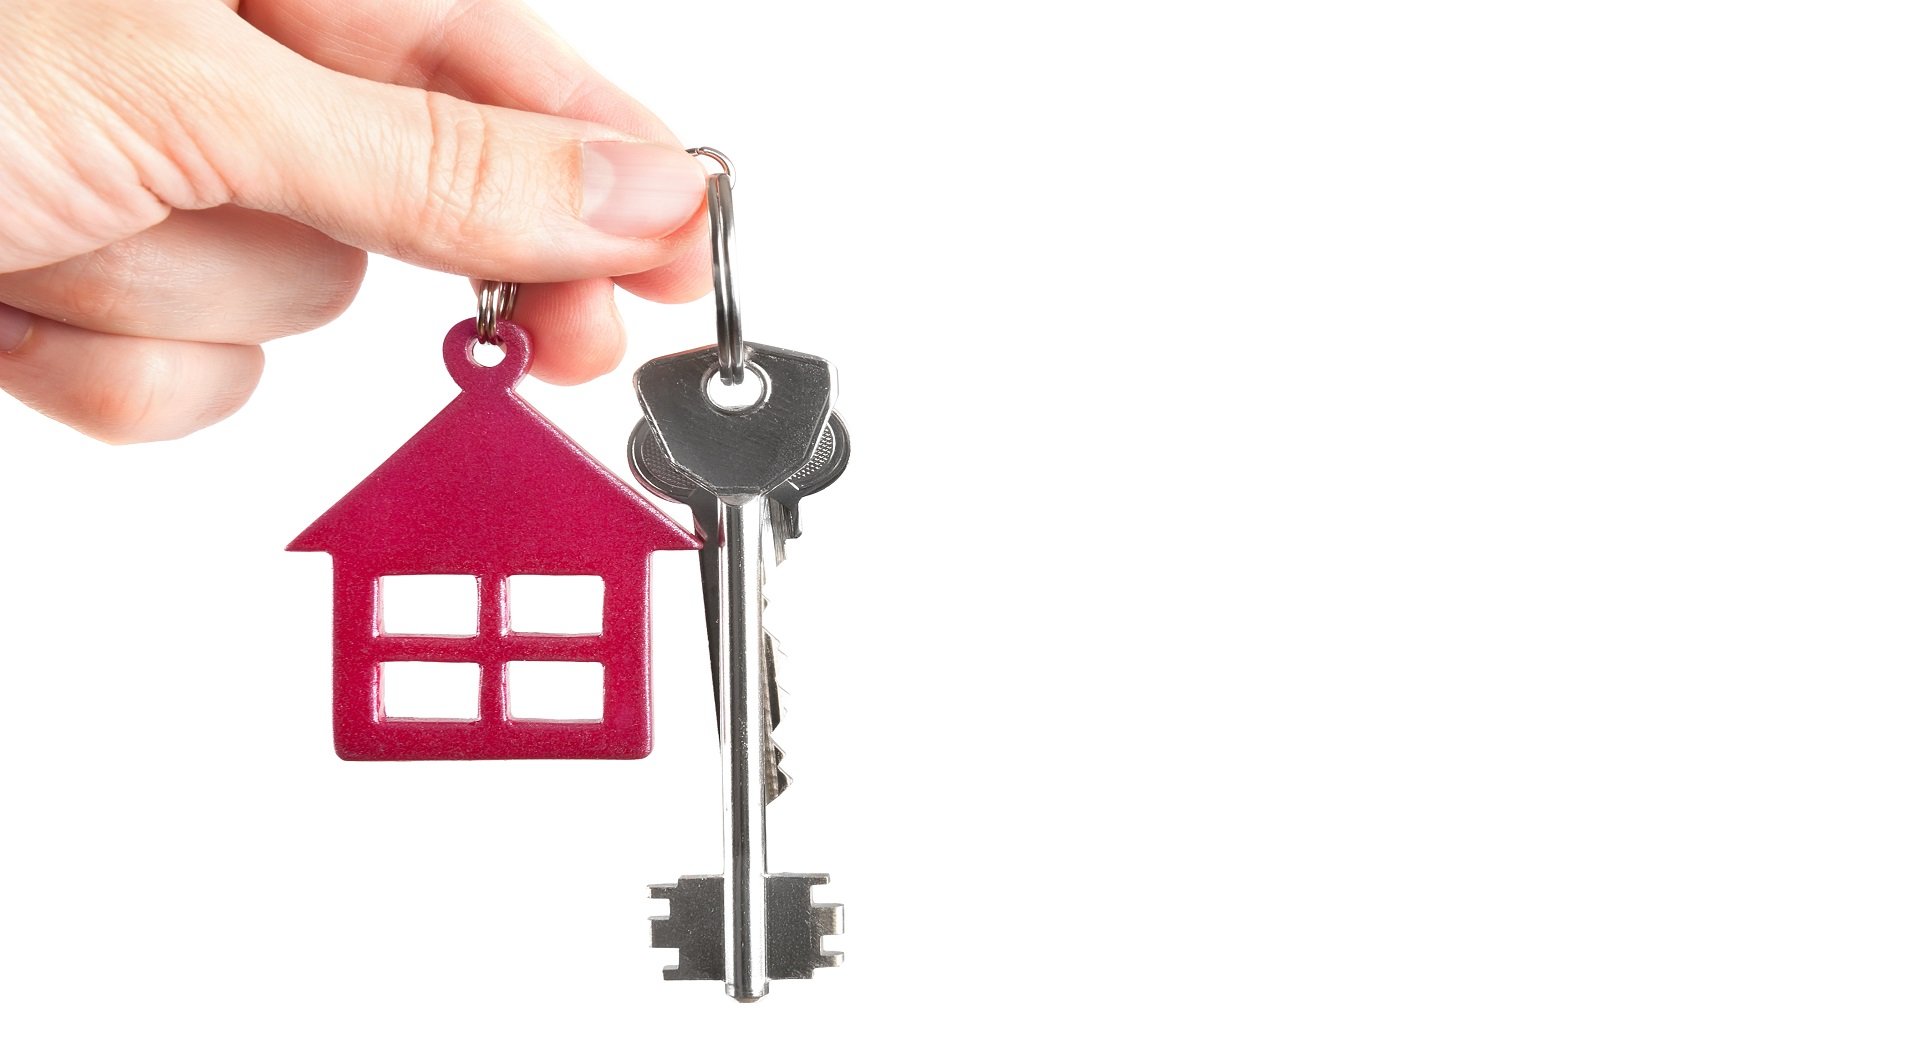 Сниму квартиру дом в ключах. Домик с ключиком. Ключи от квартиры в руке. Ключи от дома в руках. Ключи дом руки.